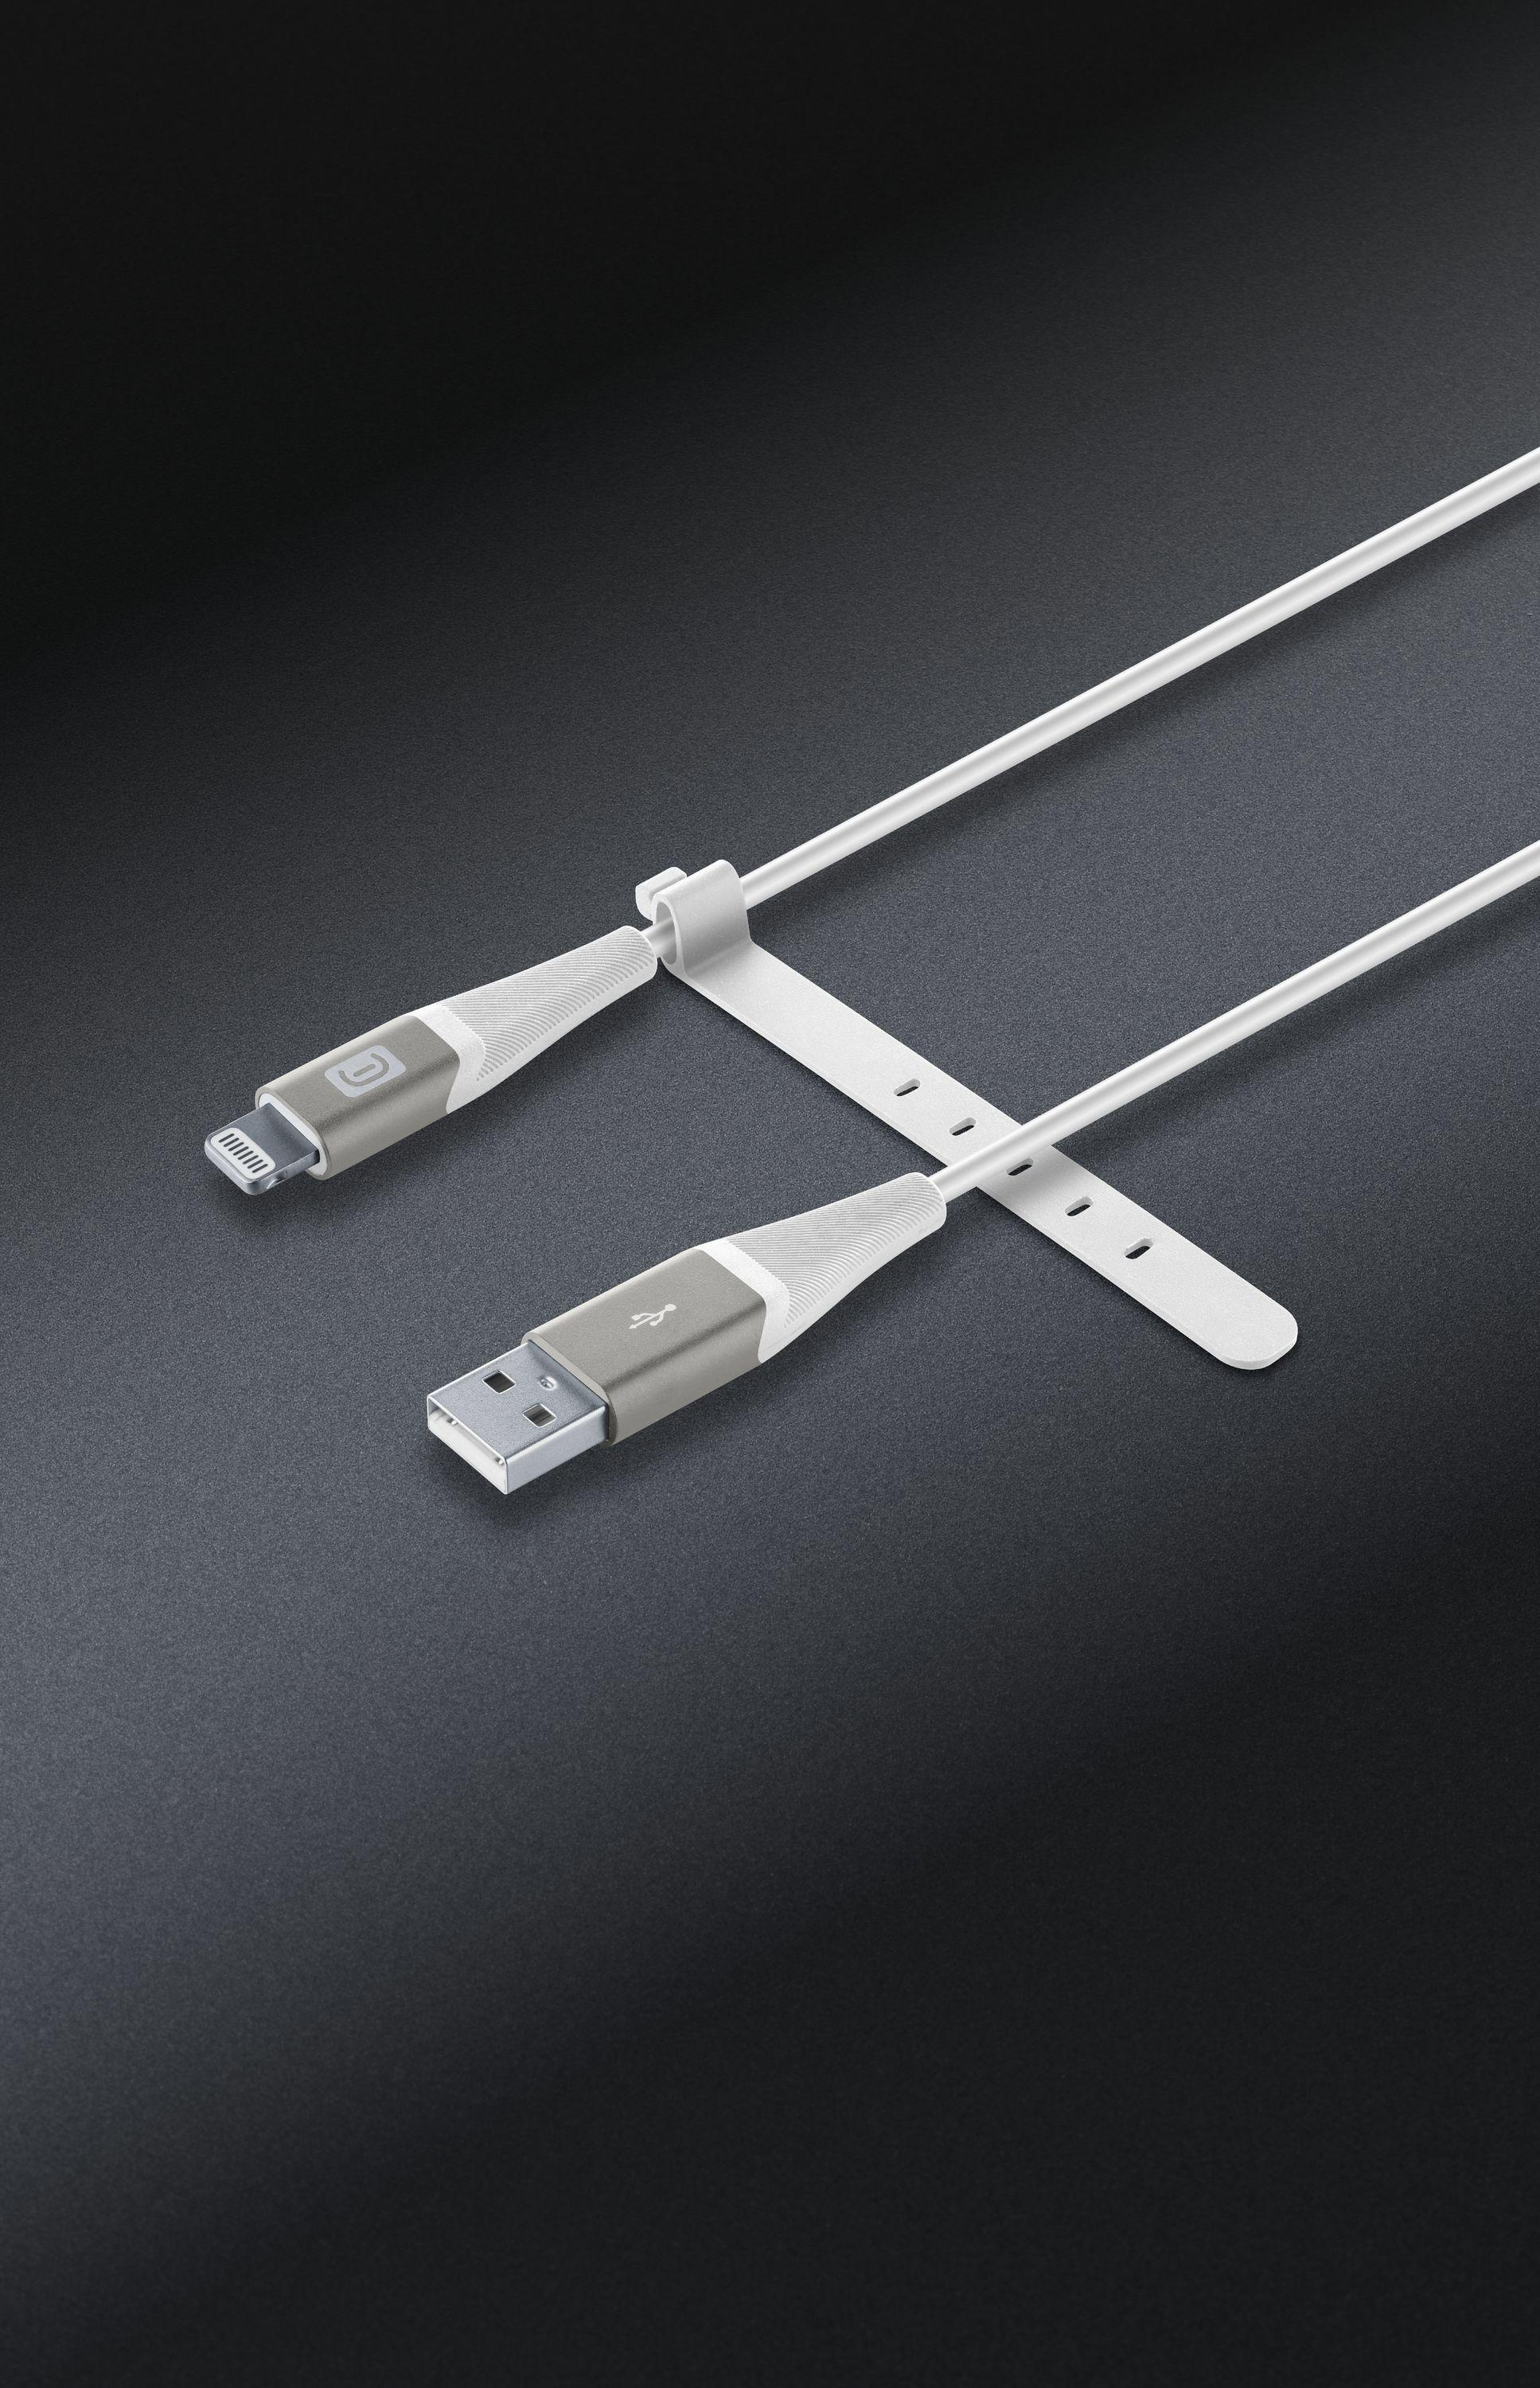 CELLULAR LINE Pro Lightning + m, Weiß USB, auf Cable 1,2 Ladekabel